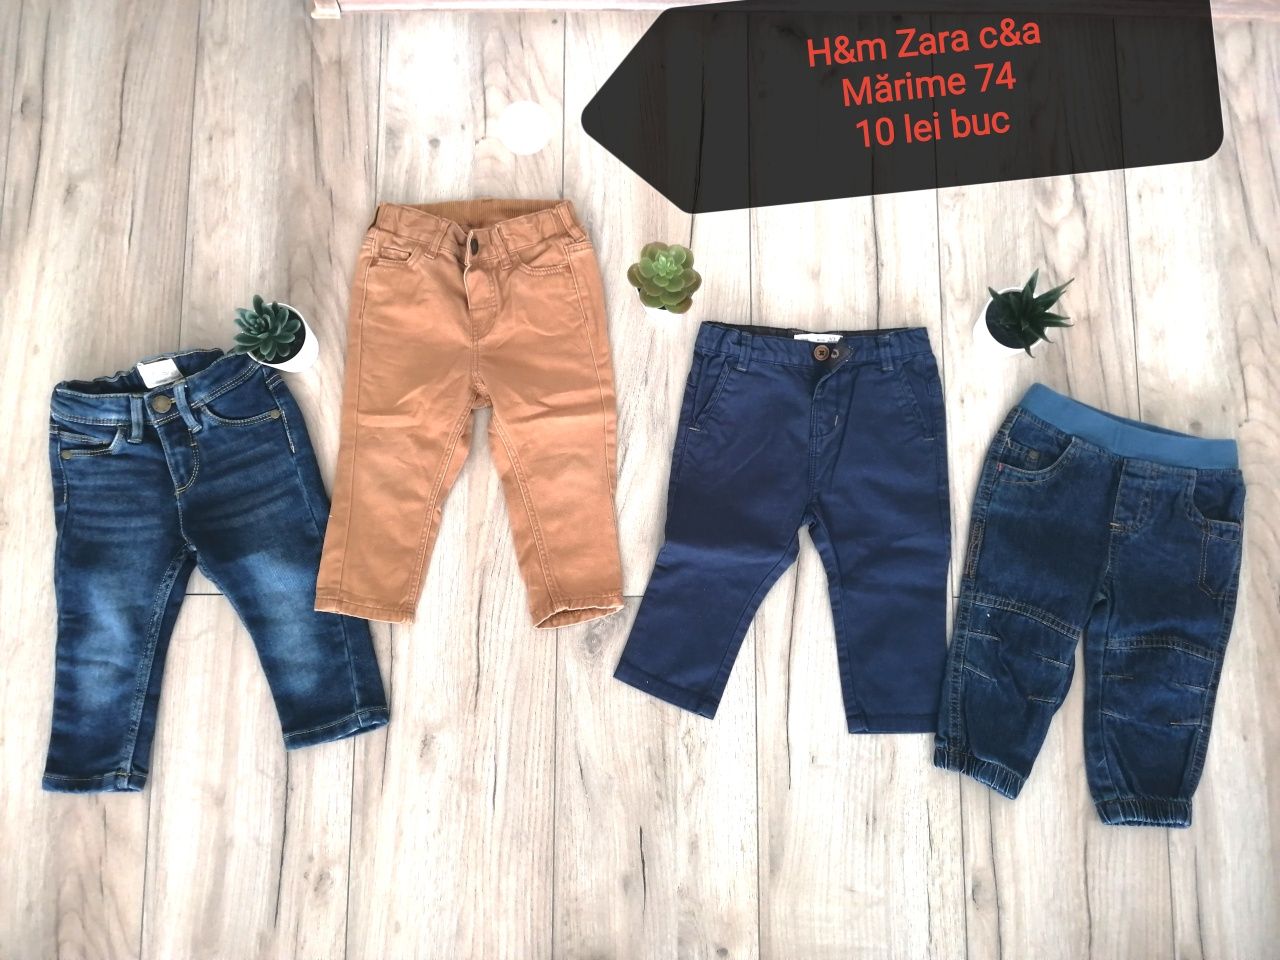 Pantaloni h&m, ZARA, C&a, mărime 74